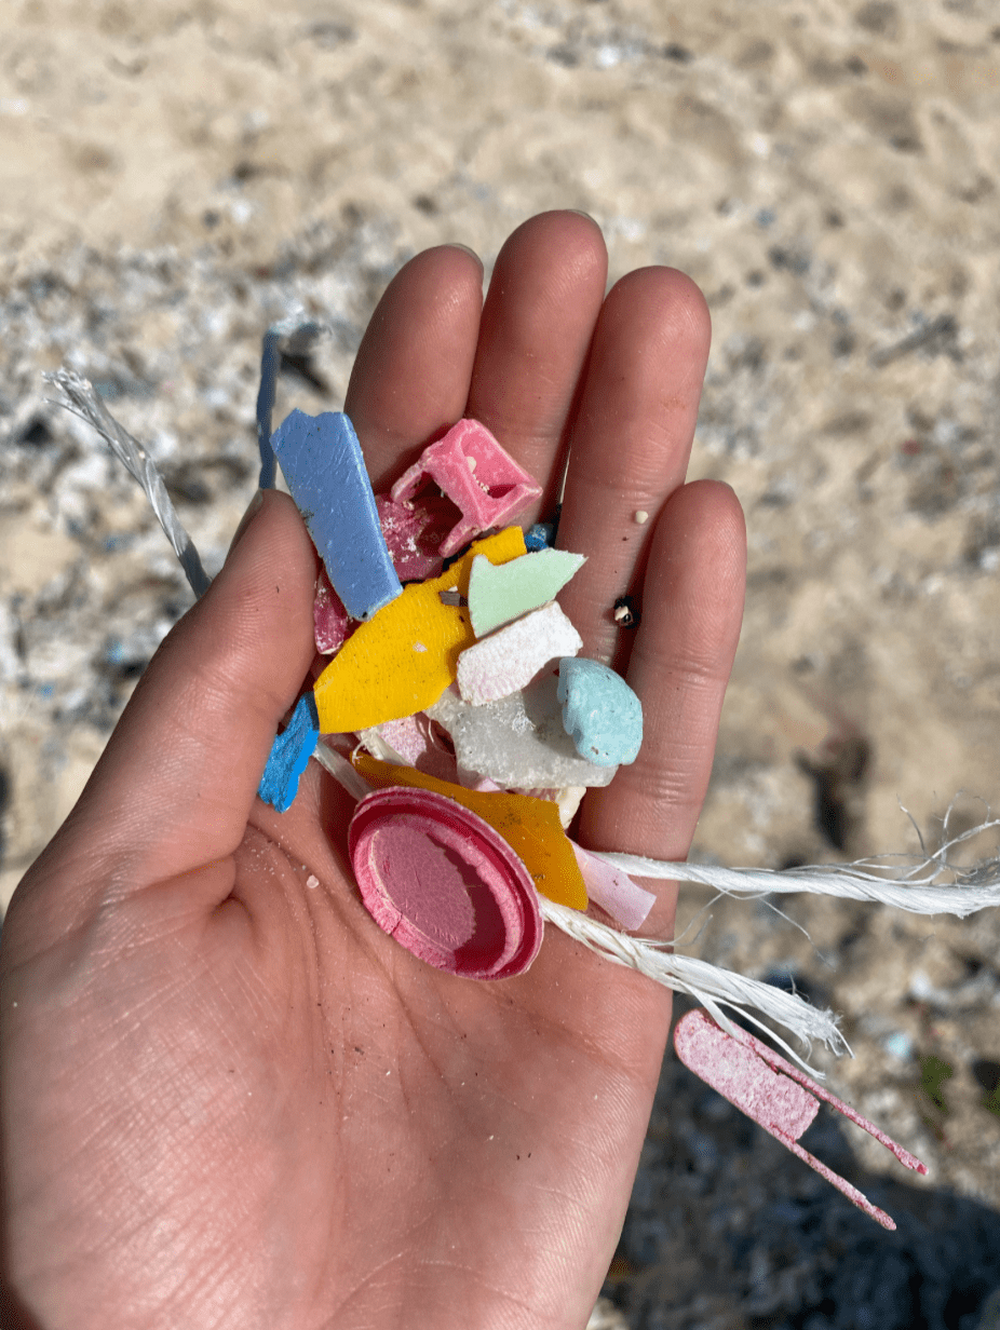 1SUP 1CLEAN UP
ツアー終了後、漂流ゴミやマイクロプラスチック問題について話しながらビーチクリーンをします。
1つでもゴミを拾うことで宮古島の海を守ることができるので、皆さんが環境問題について考えるきっかけになれば嬉しいです。